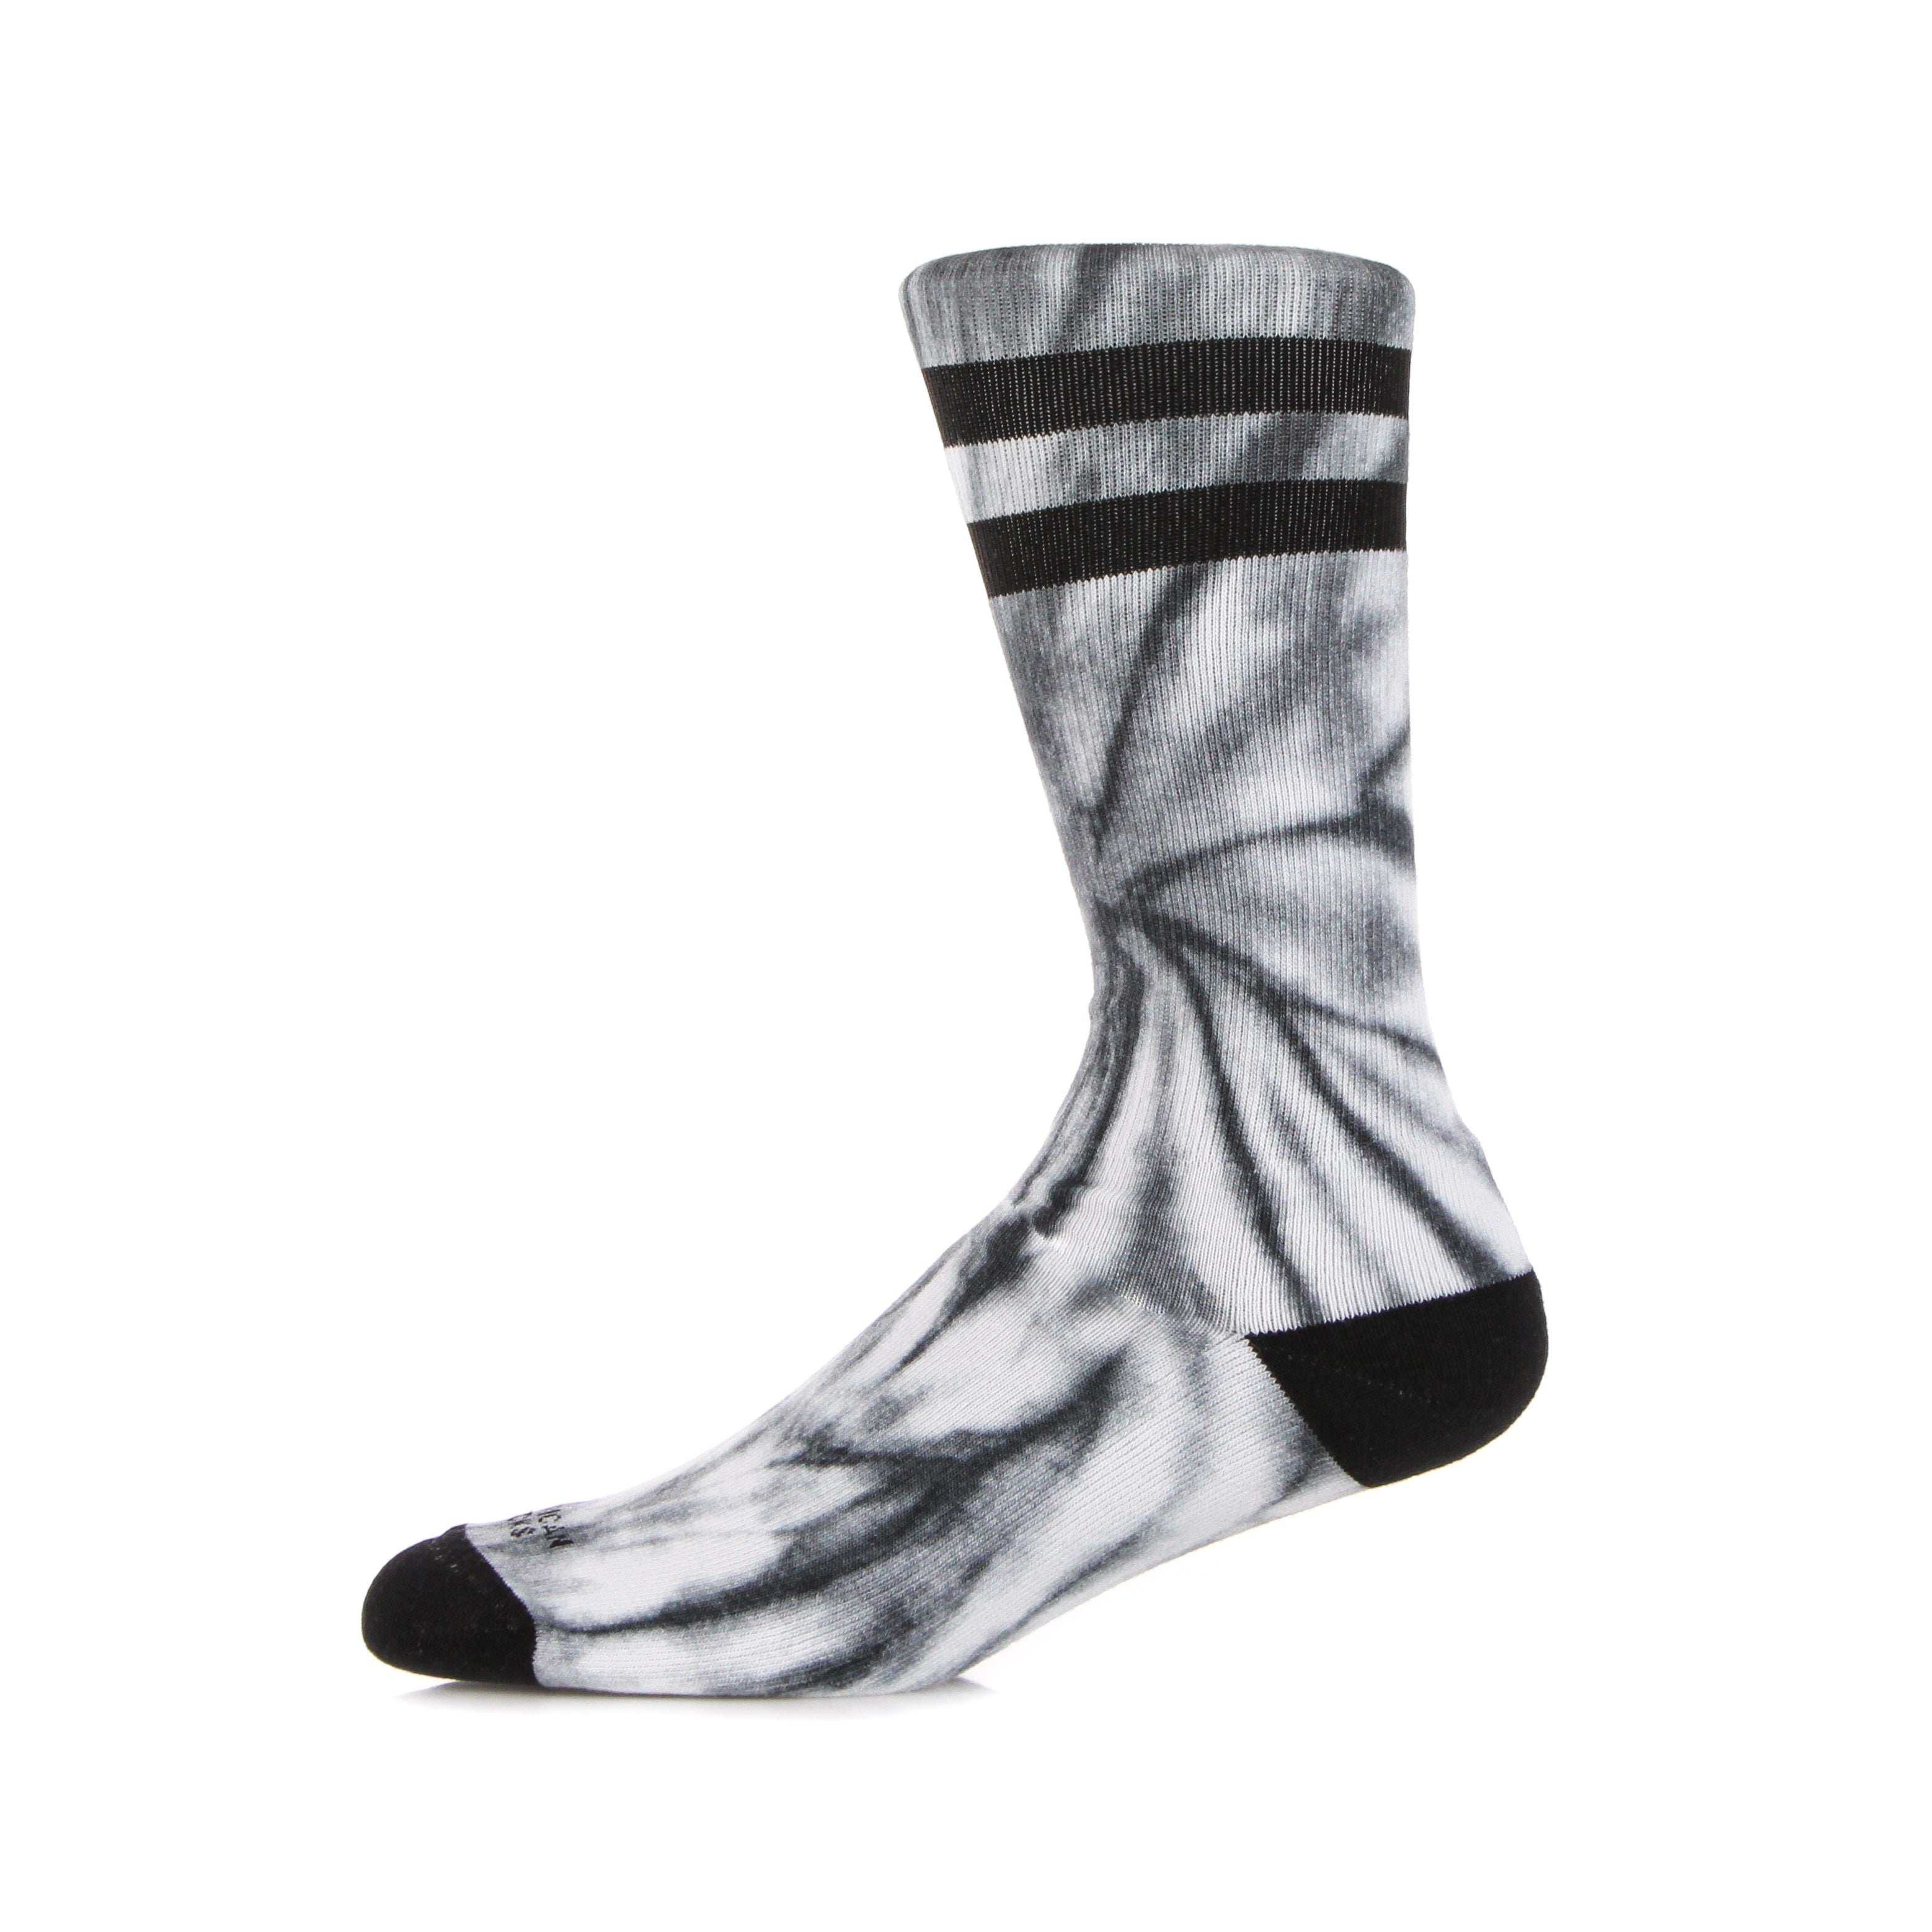 American Socks, Calza Media Uomo Tie Dye Monochrome, Monochrome